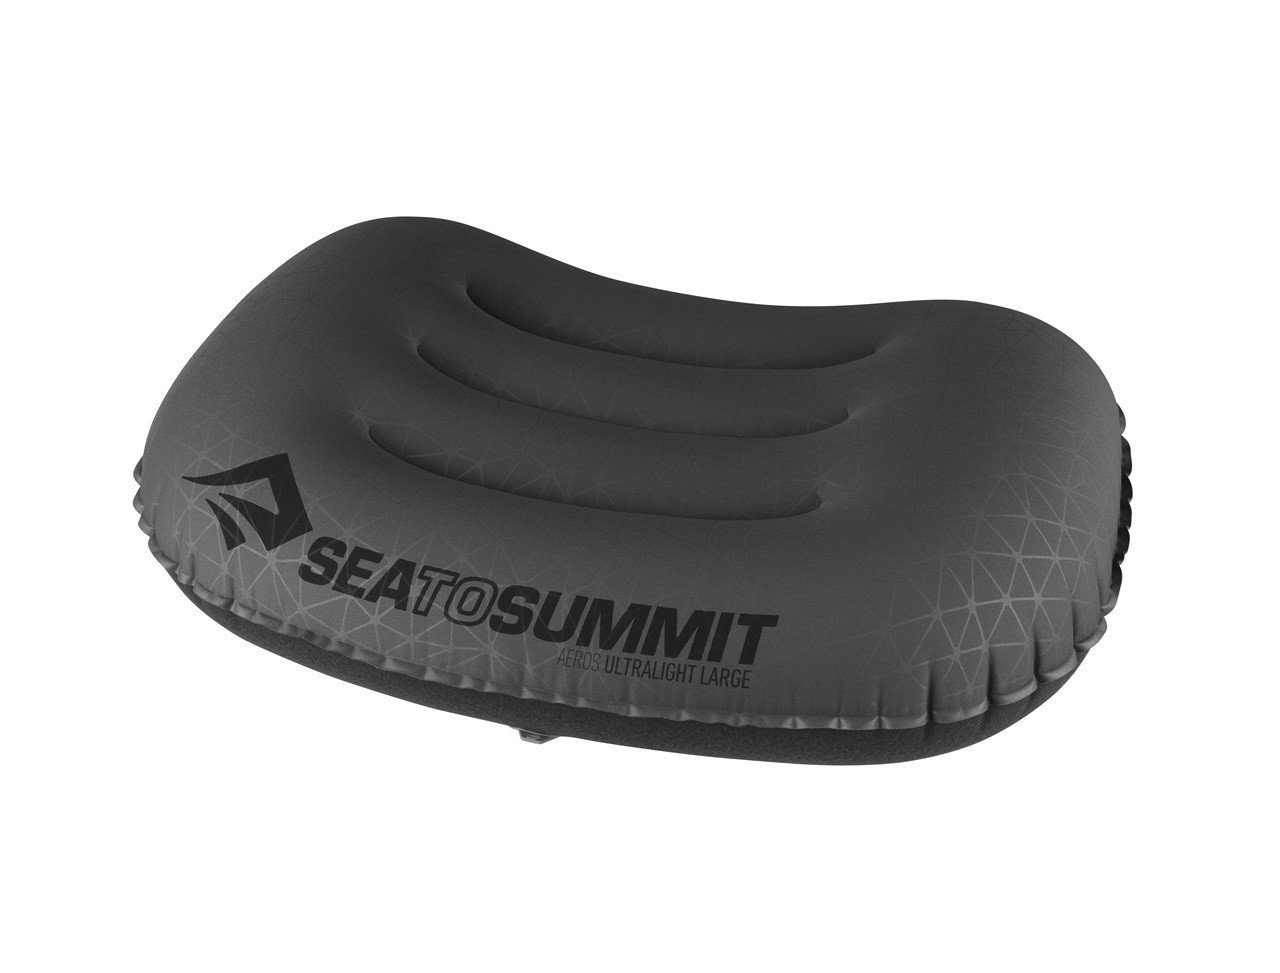 Reisekissen summit Ultralight sea grey Aeros Pillow to